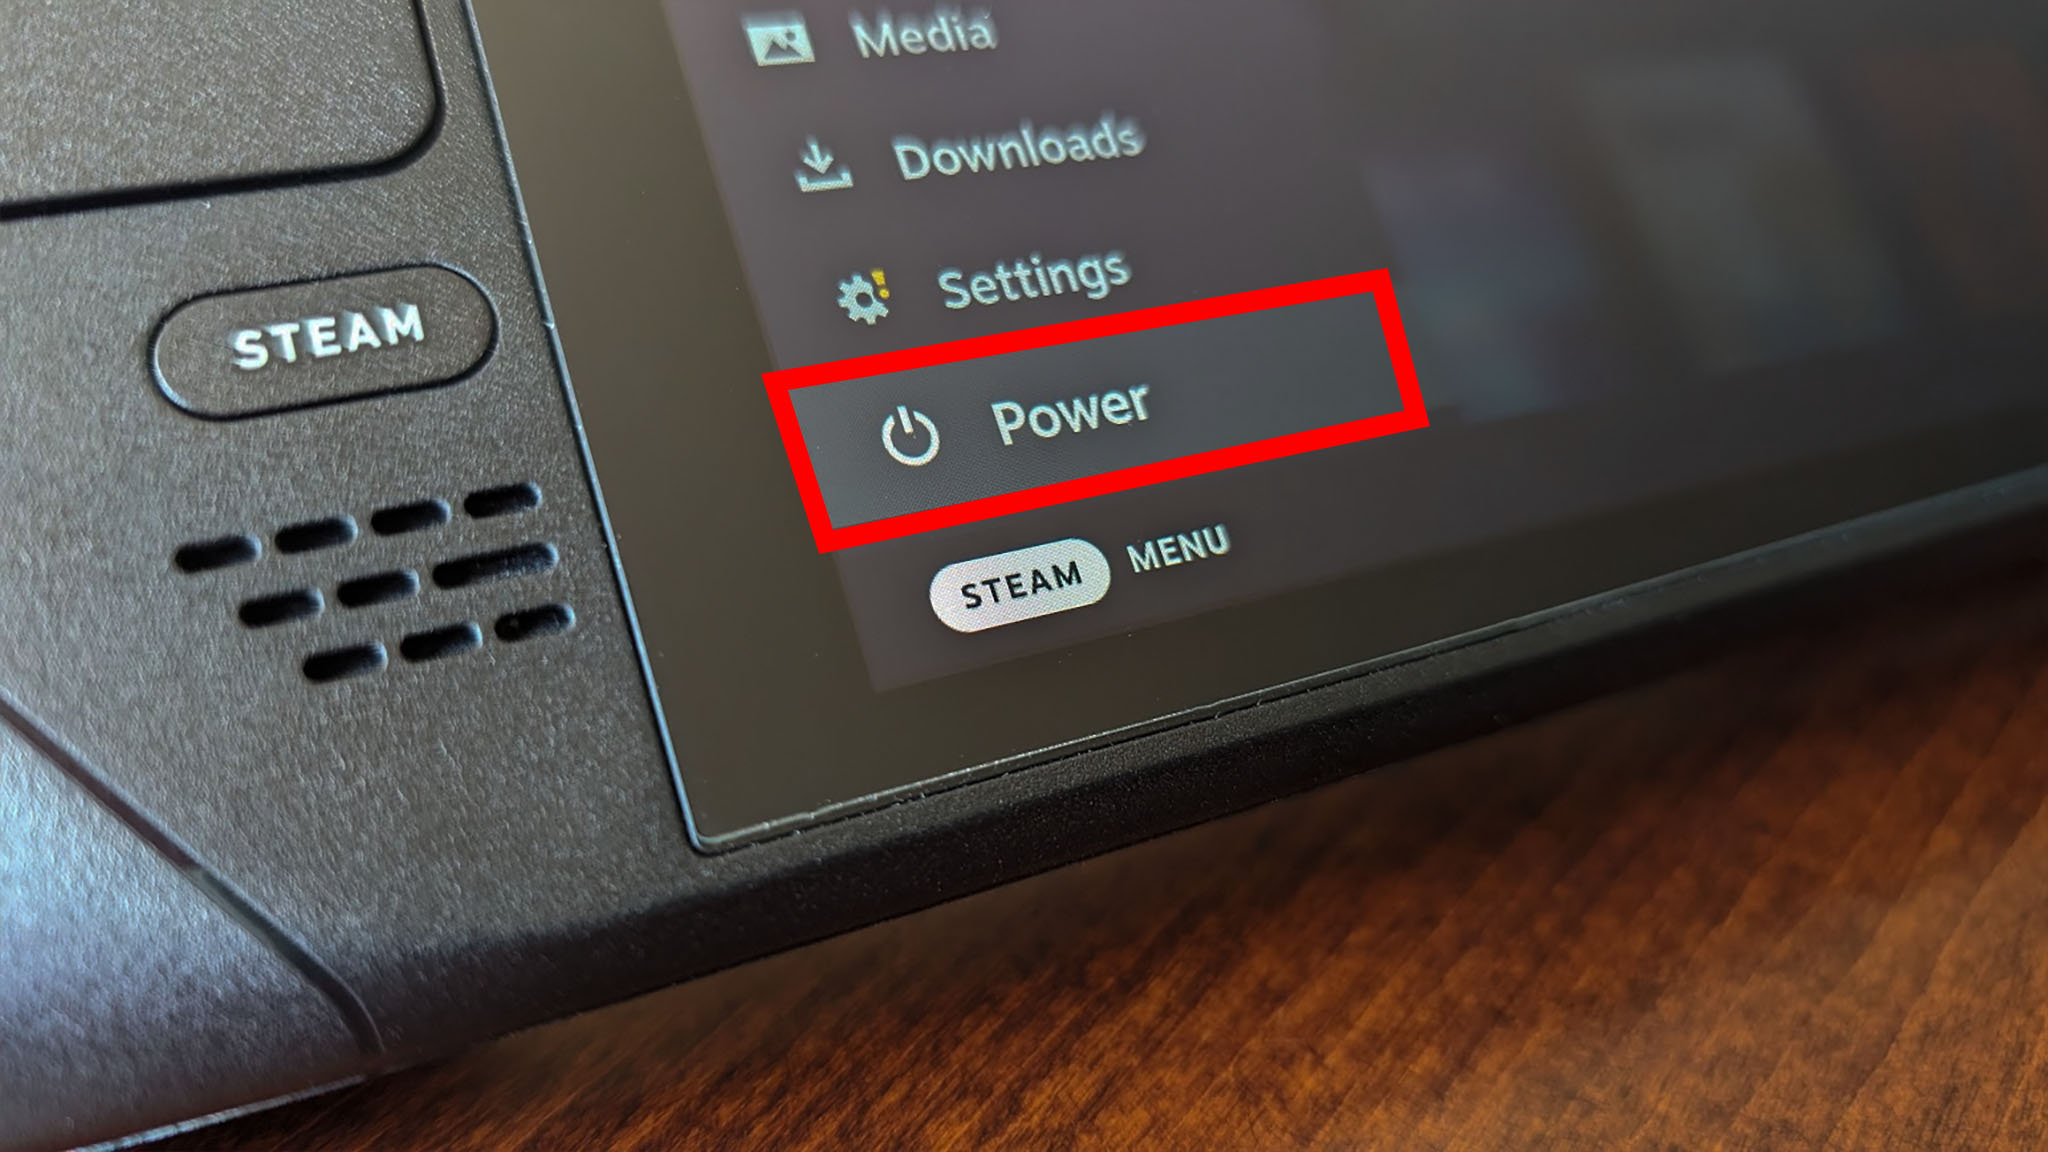 Google on Steam Deck: Power.